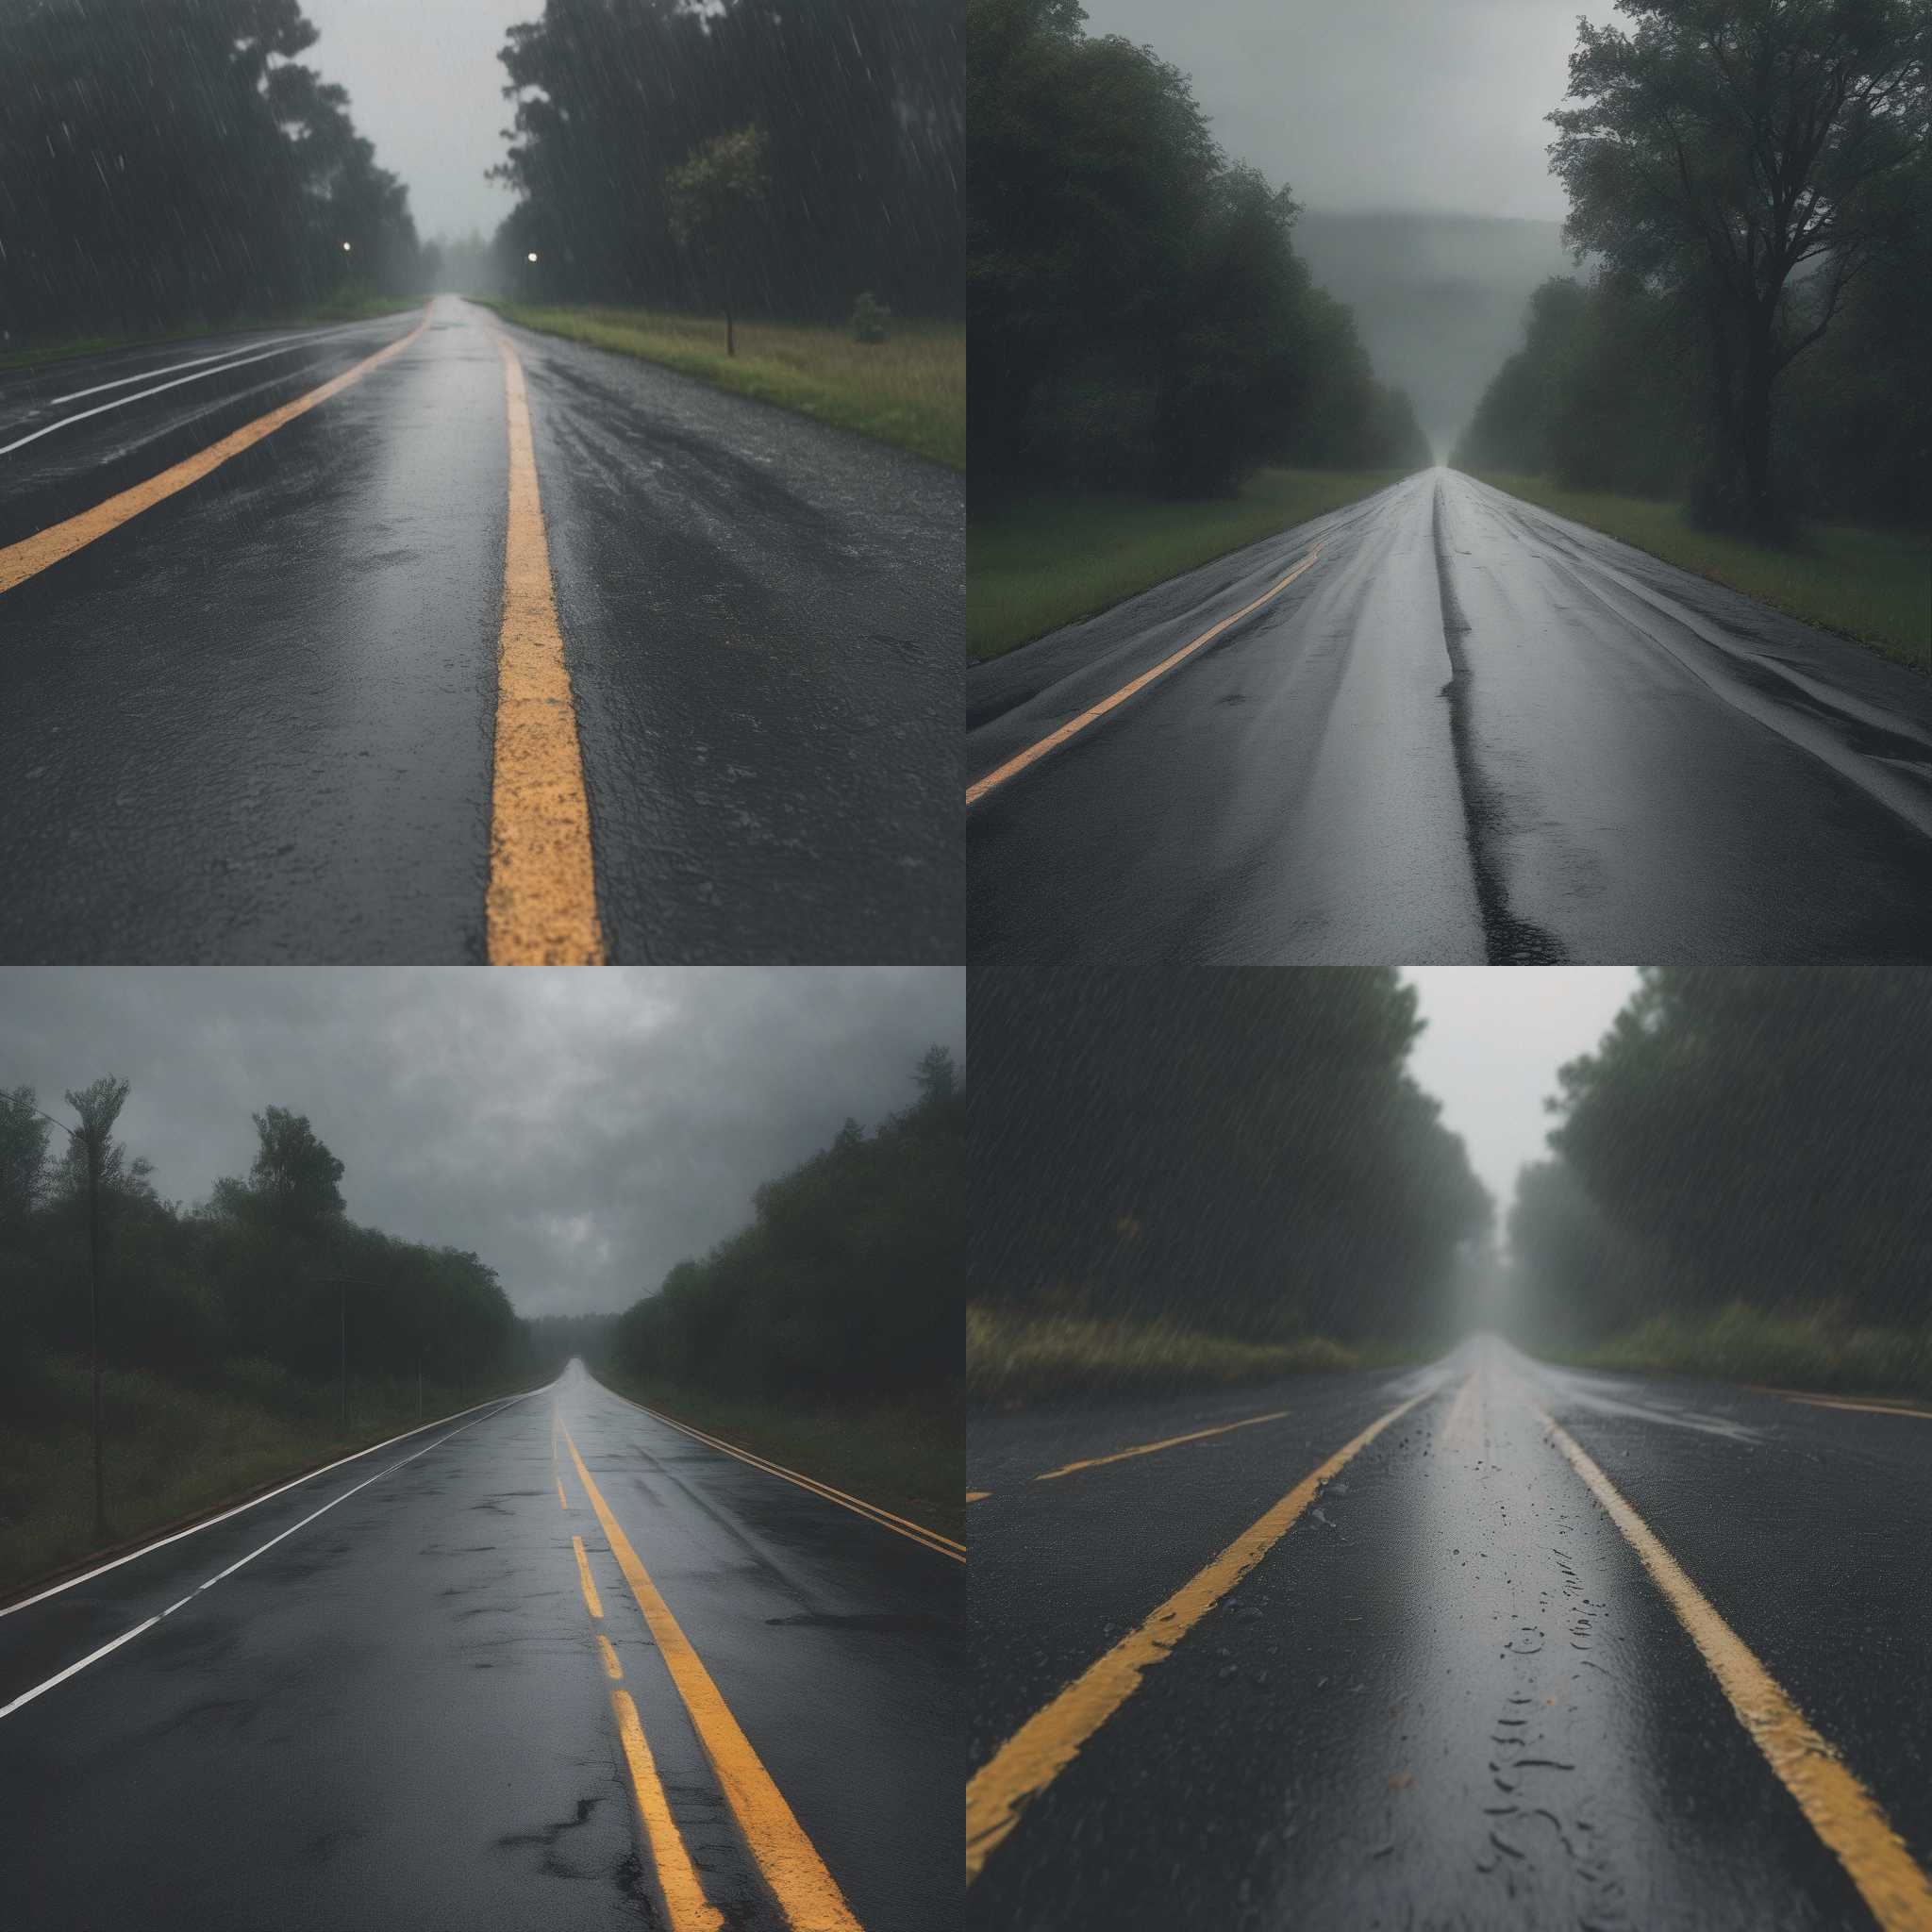 An asphalt road on a rainy day